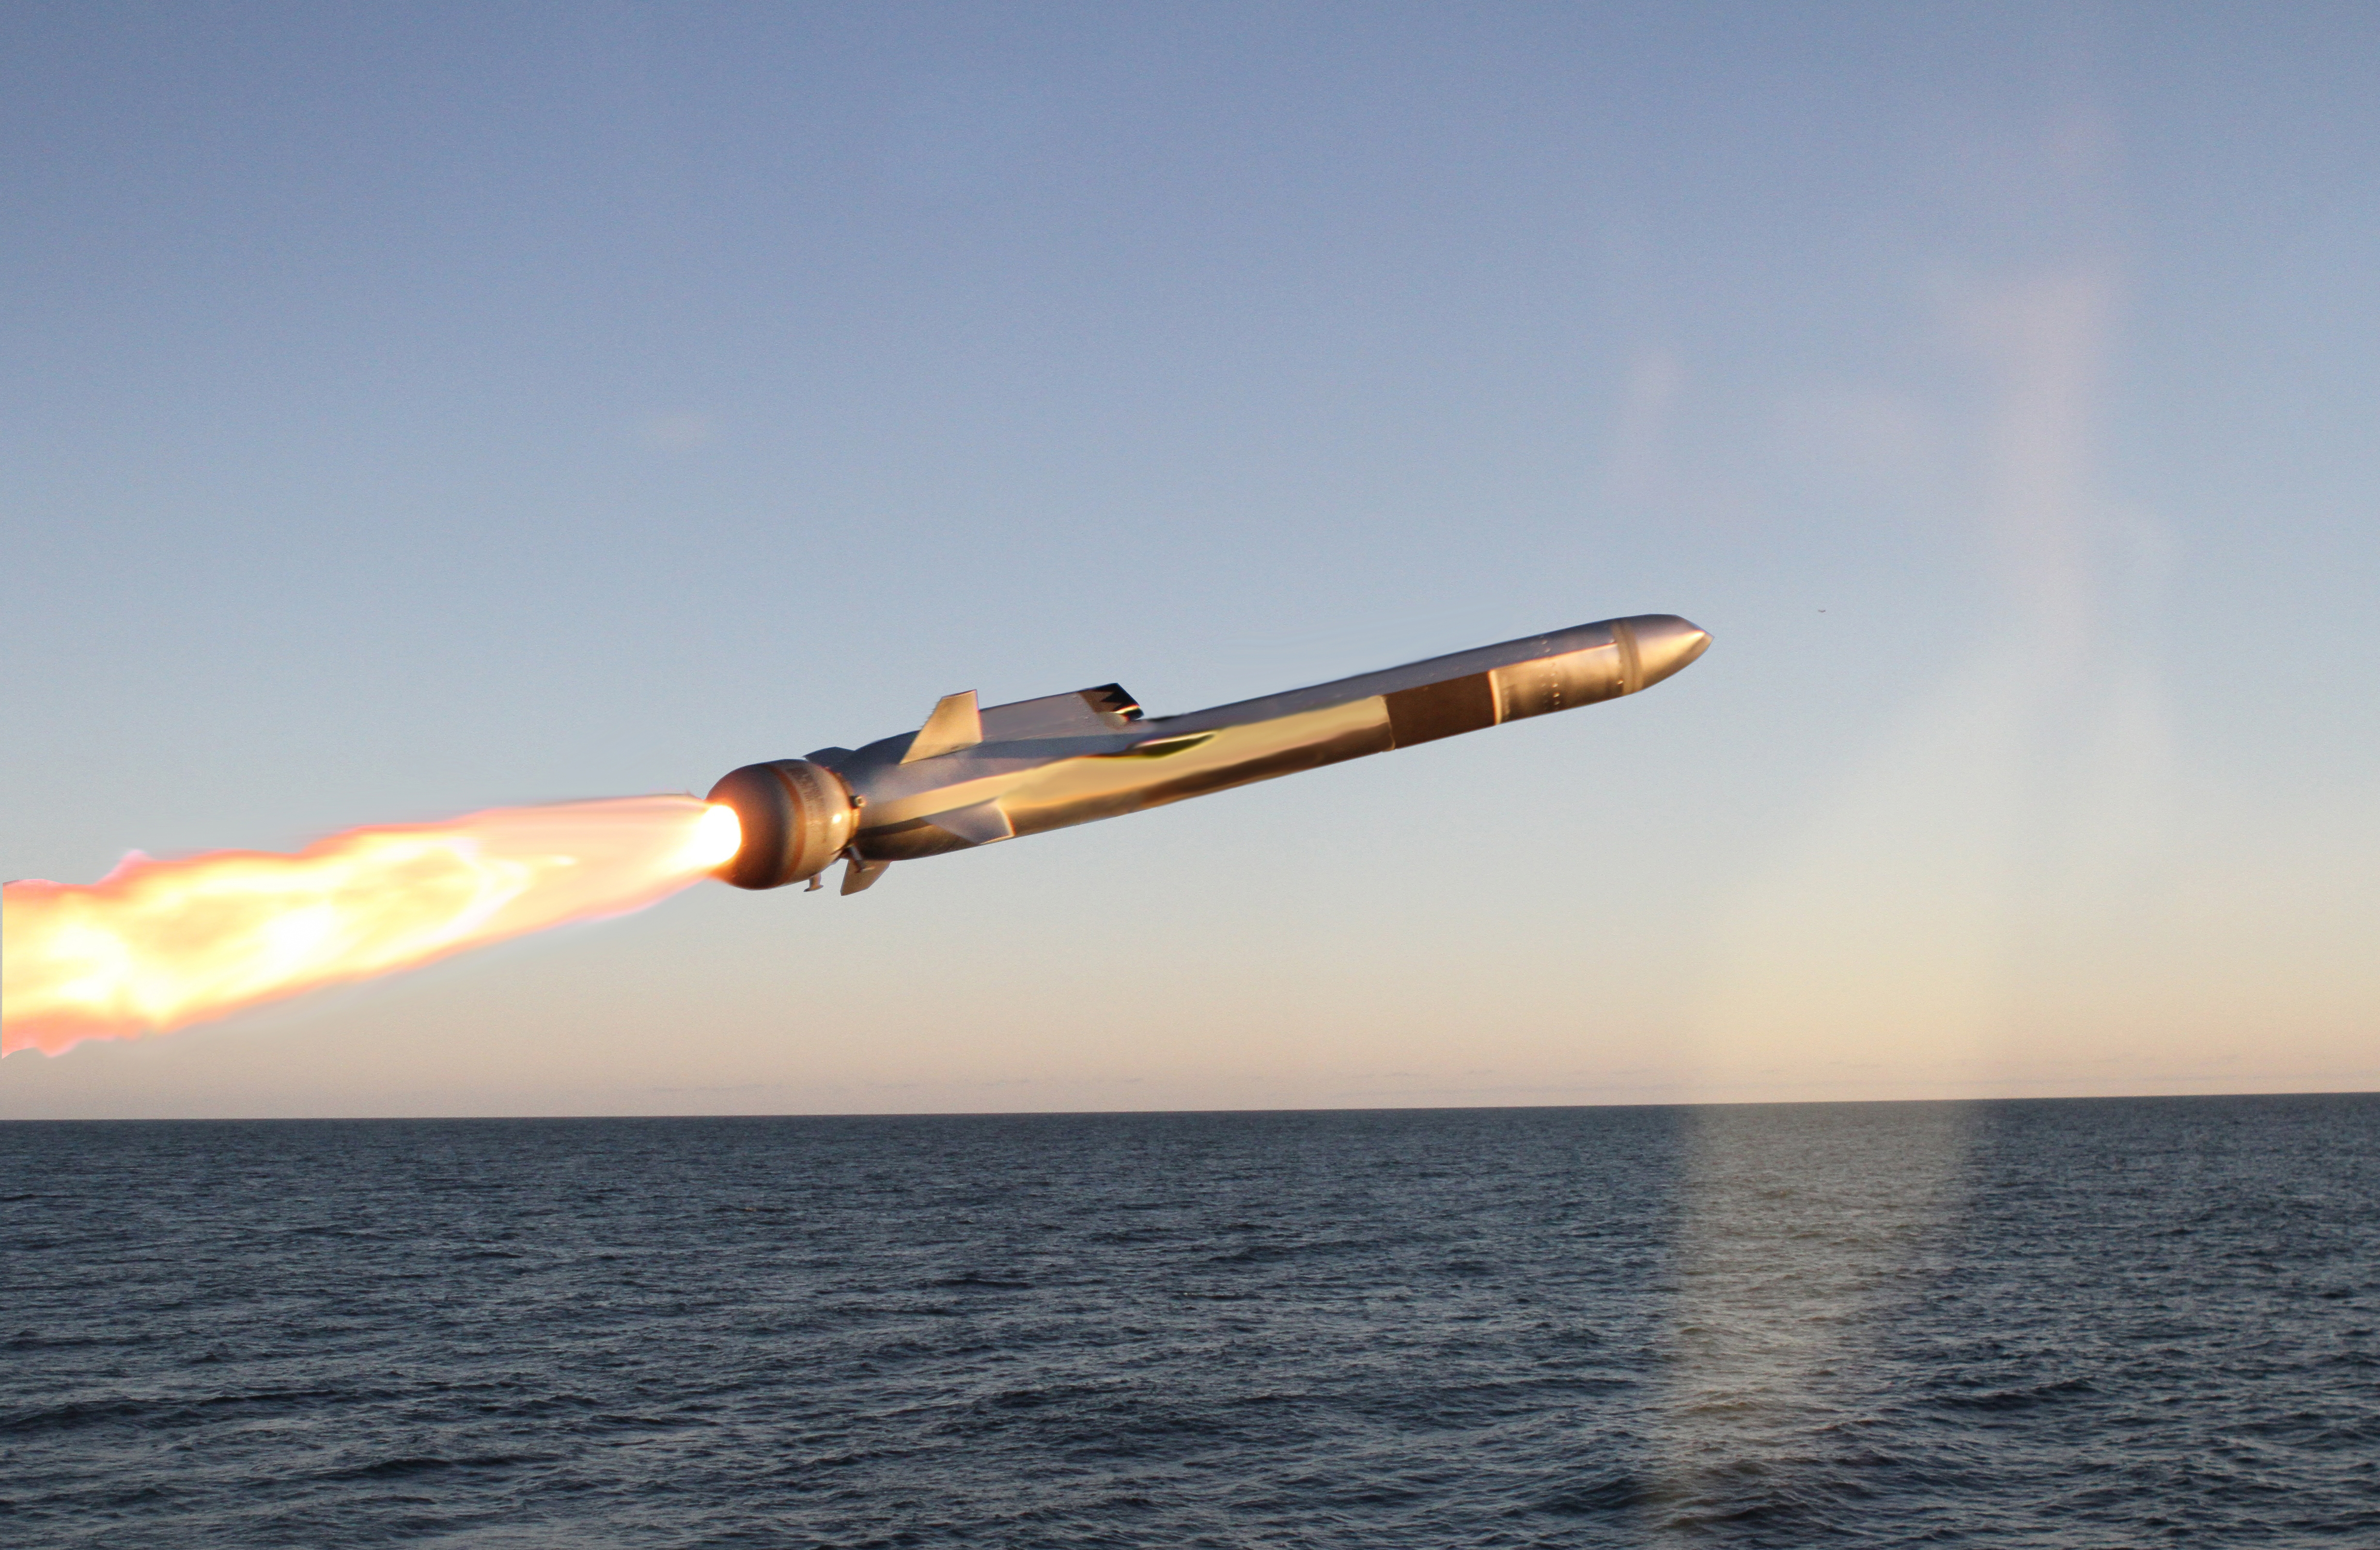 Naval strike missile in flight over ocean. Credit: KONGSBERG